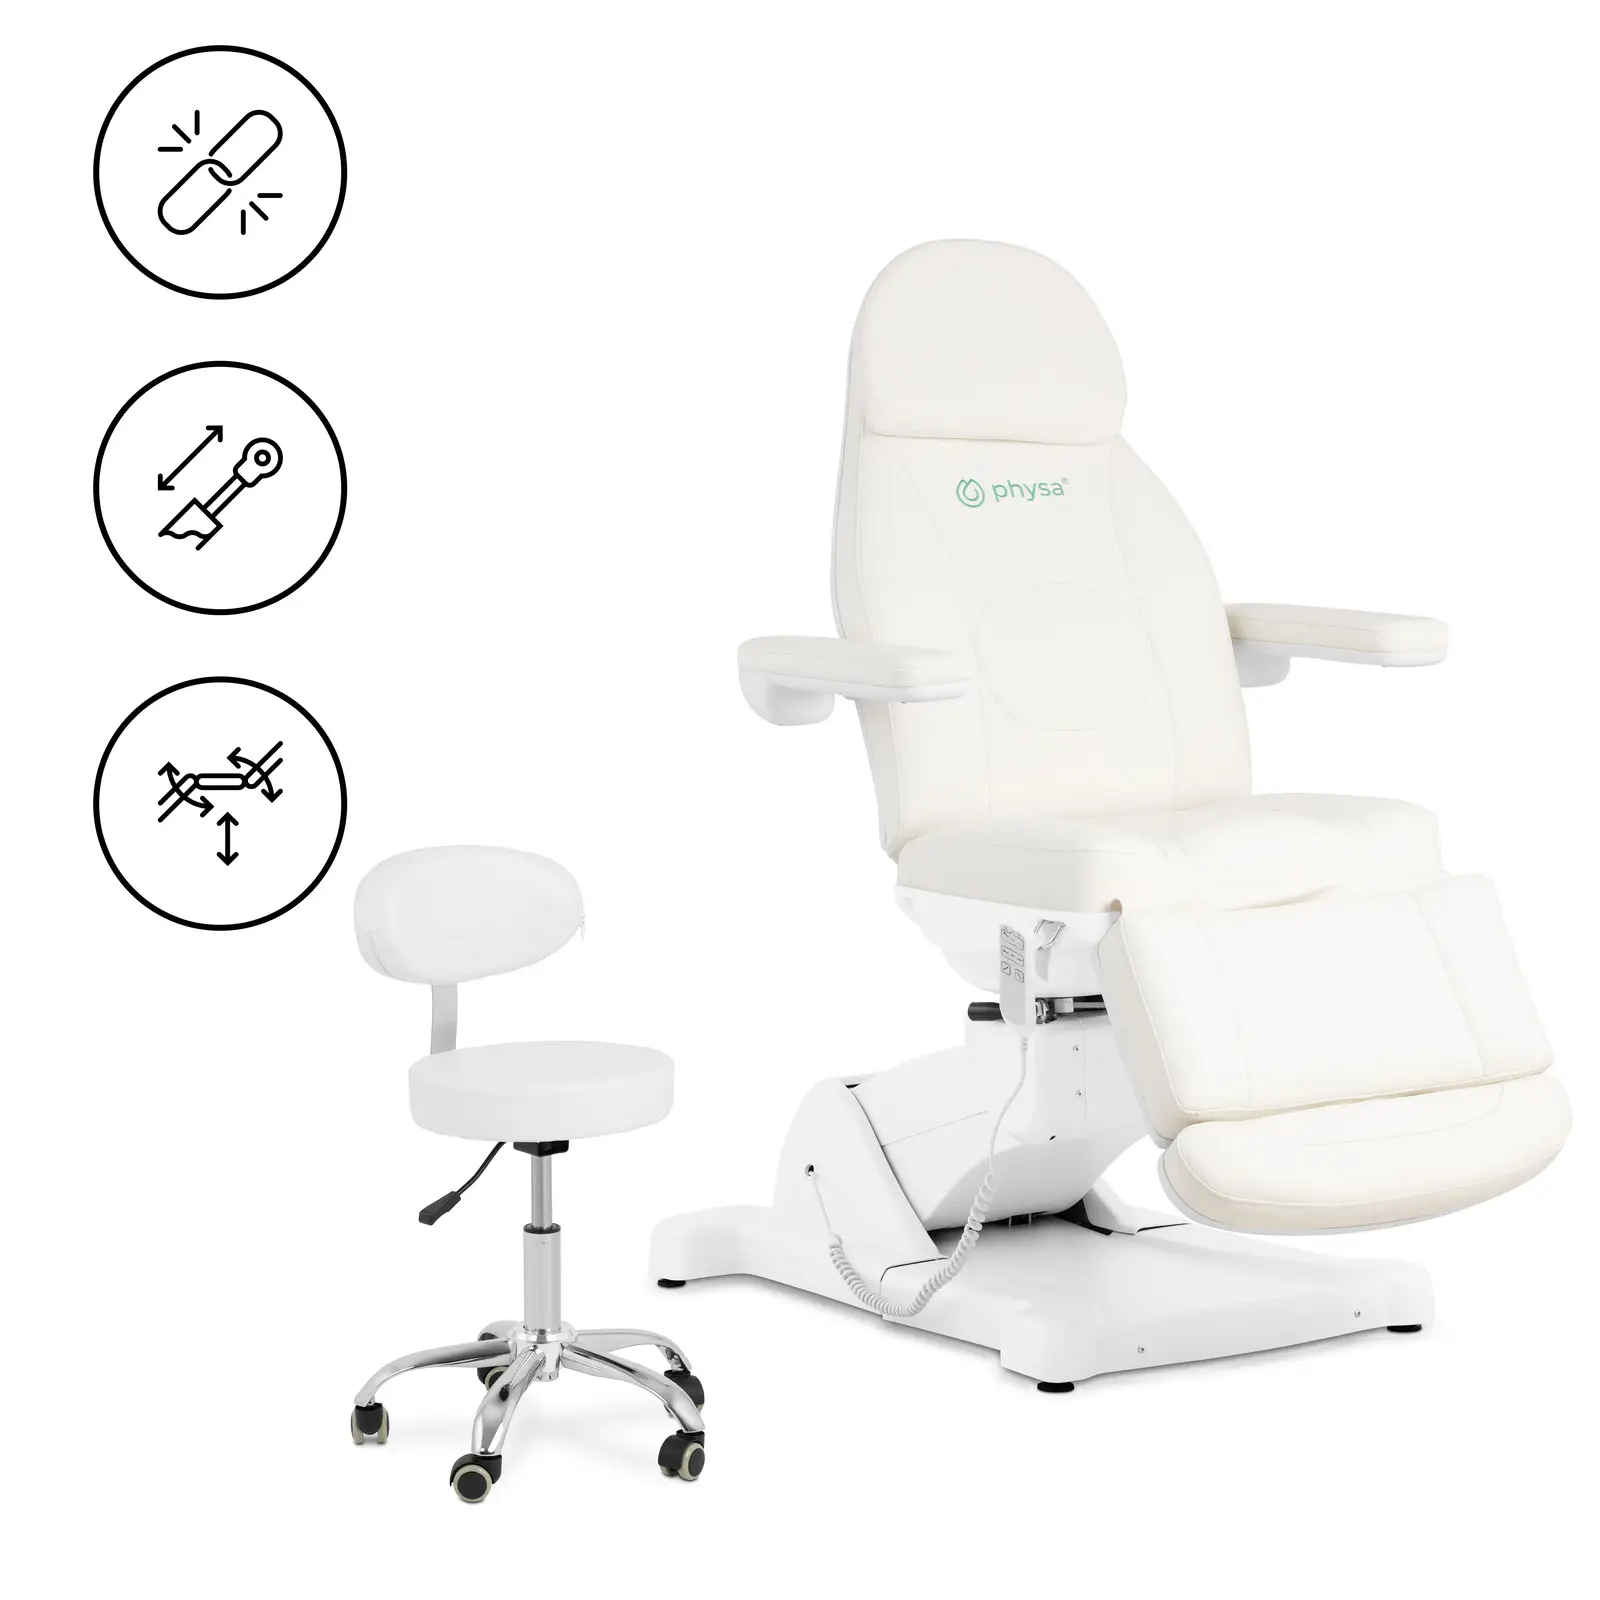 Elektrische cosmetische behandelstoel met rolkruk - 350 W - 150 kg per stuk - pistache / wit